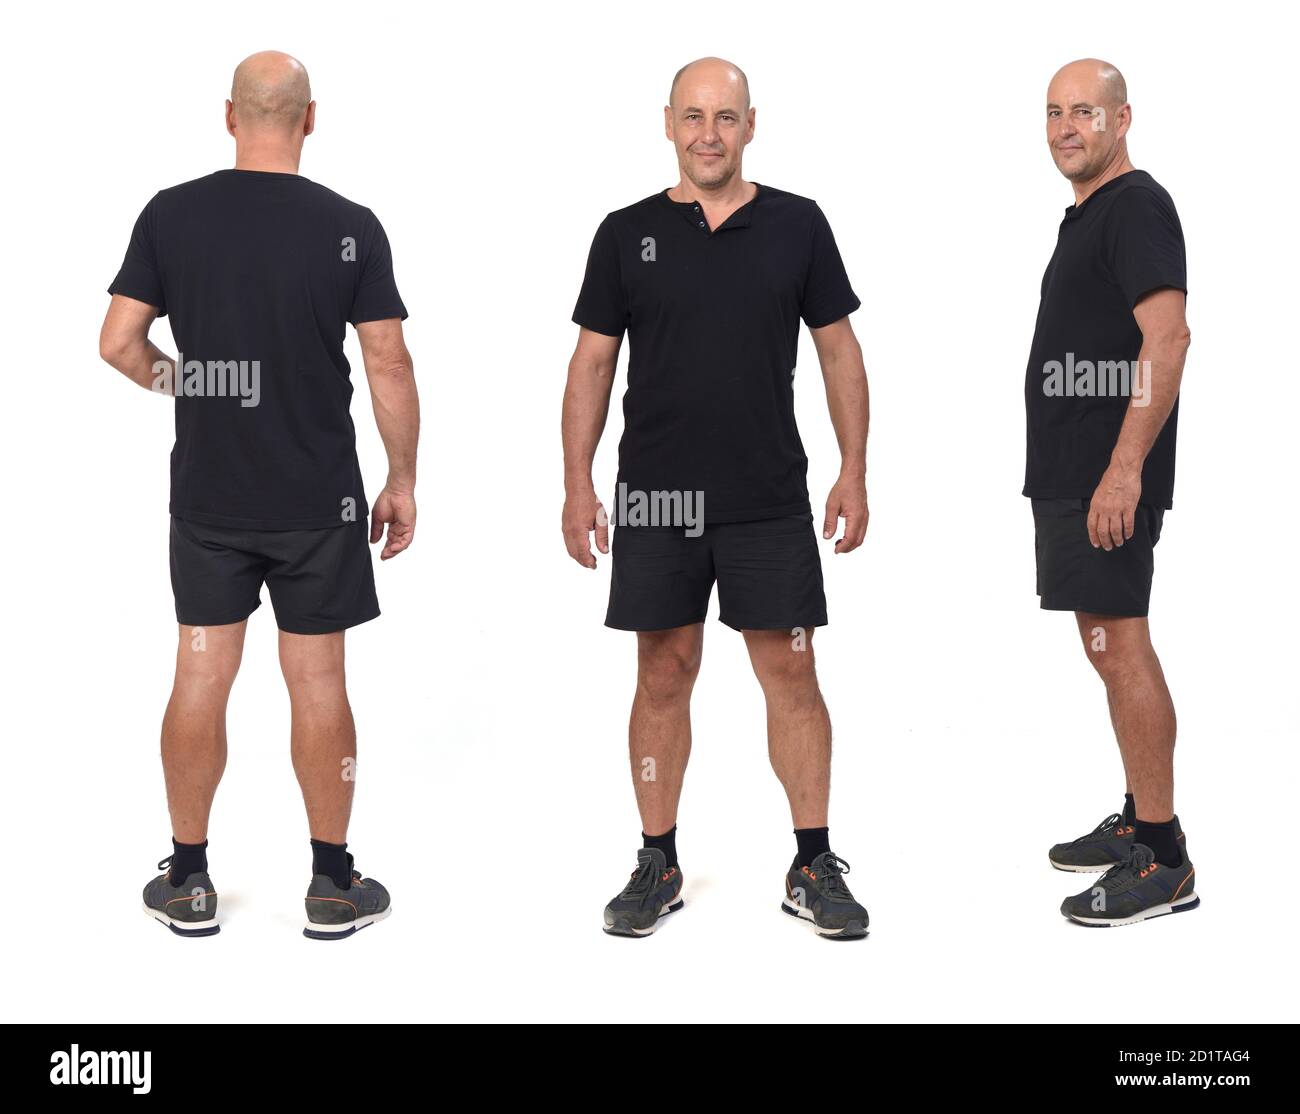 vista frontal, lateral y posterior de un mismo hombre que lleva camiseta y pantalón corto deportivo, Foto de stock